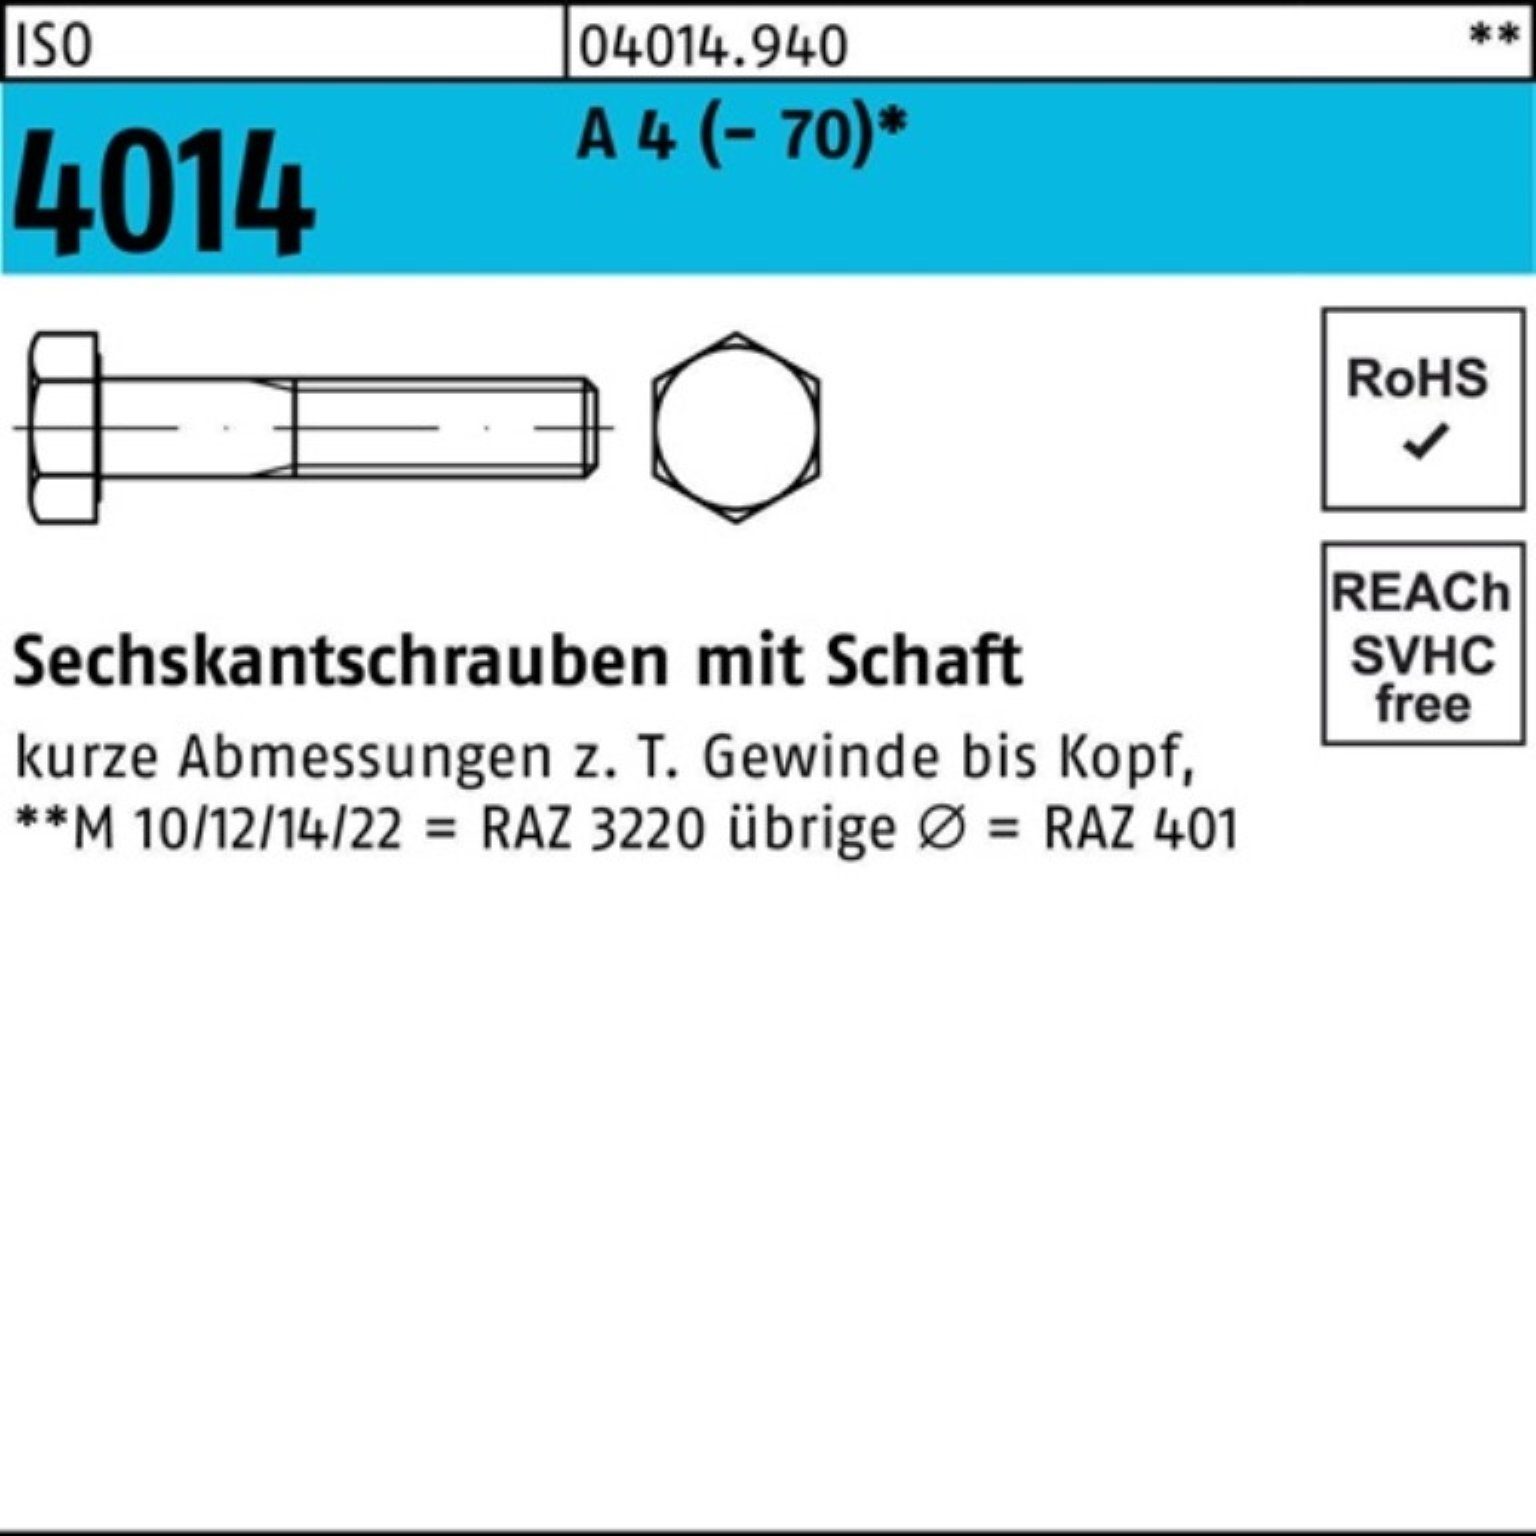 Bufab Sechskantschraube 100er (70) 1 220 A Pack M20x 4014 4 ISO St Sechskantschraube Schaft